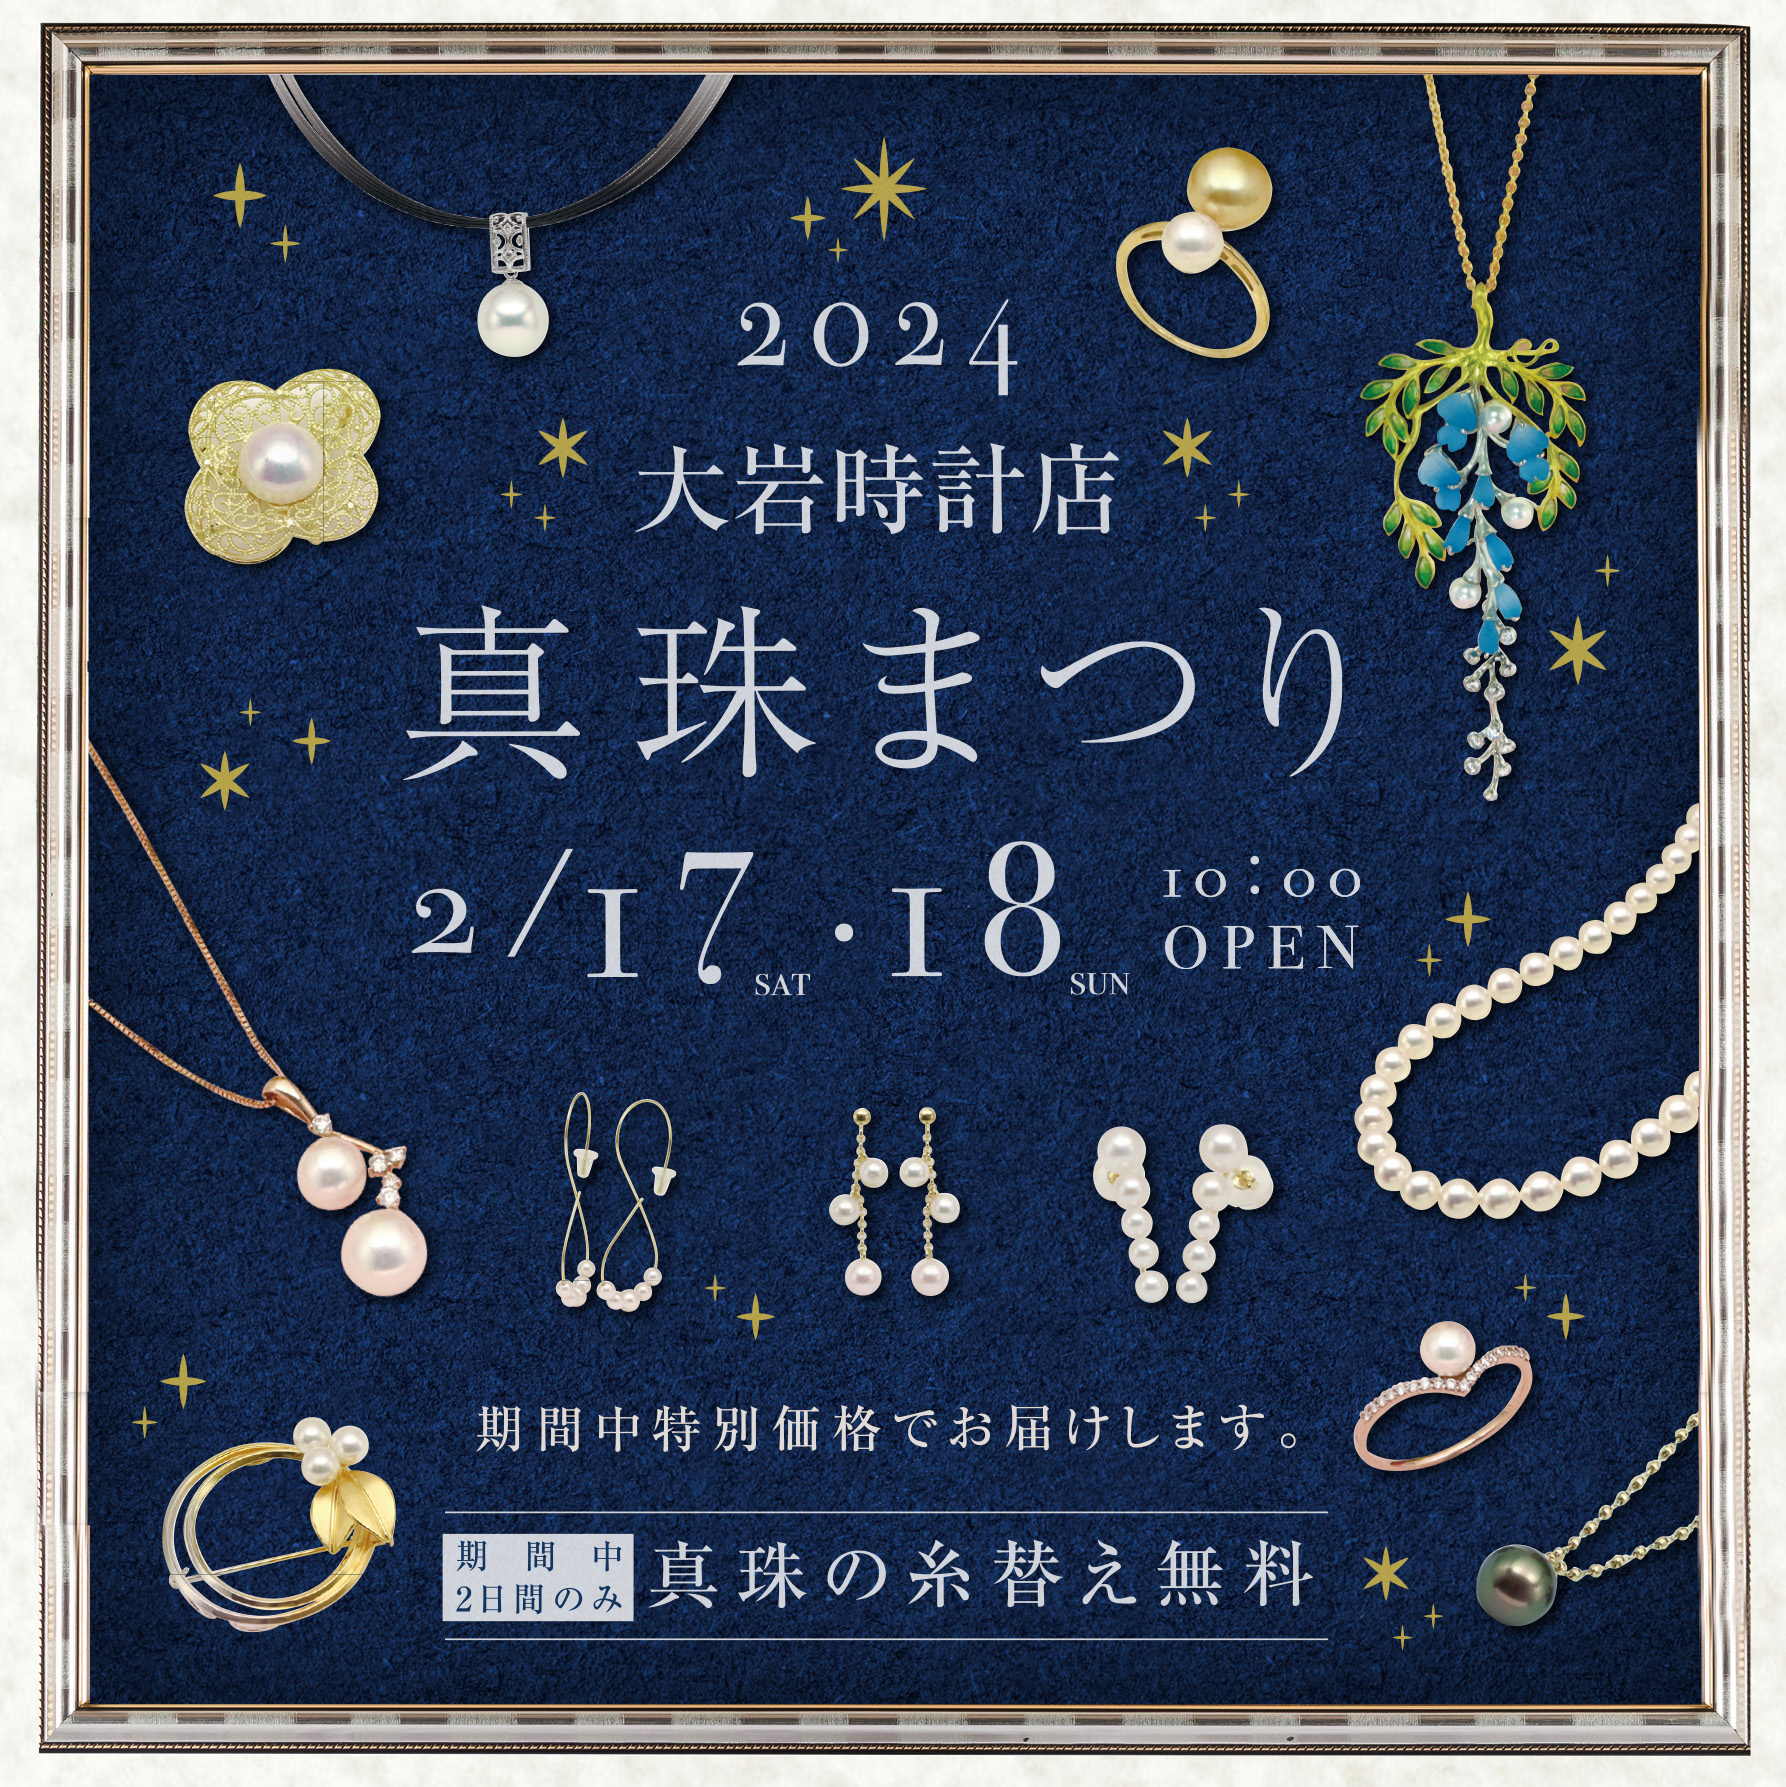 【2024年2月17日・18日】真珠まつりを開催【大岩時計店】